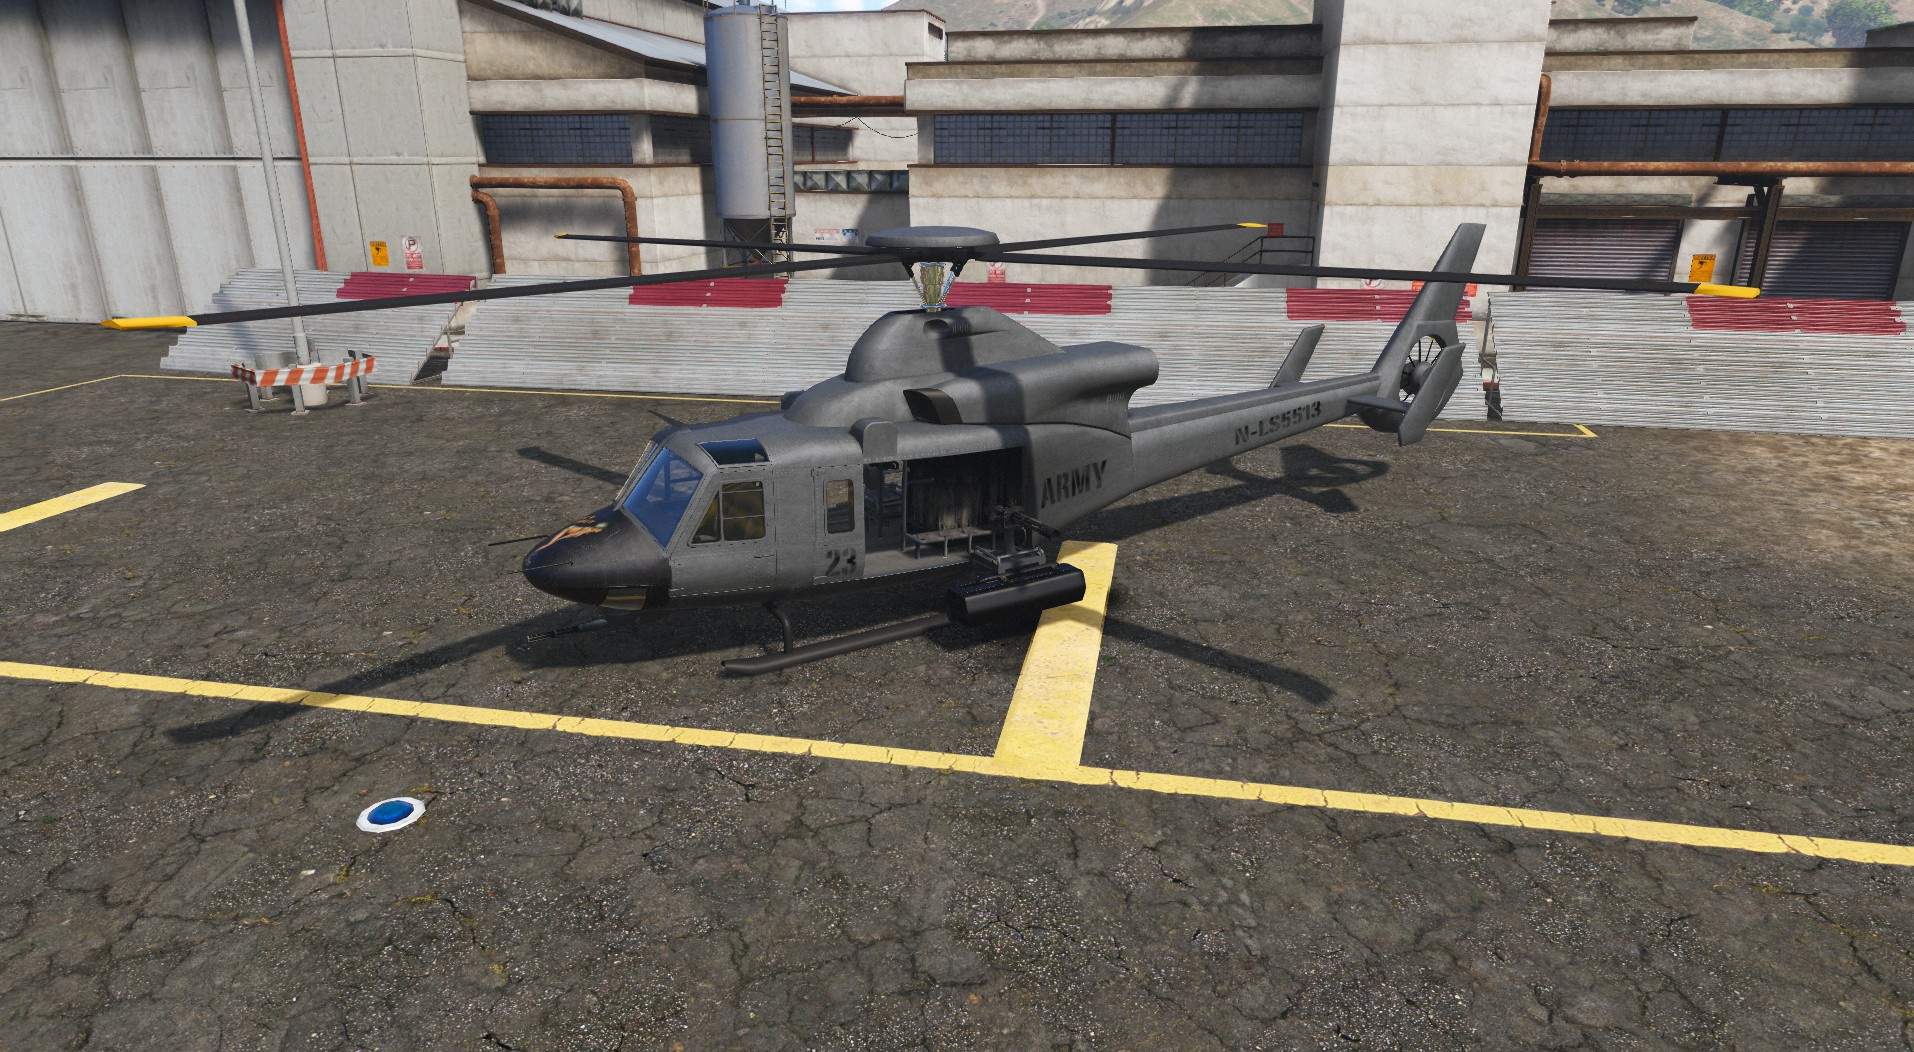 GTA 5: como obter o avião Hydra e o helicóptero Valkyrie do novo DLC